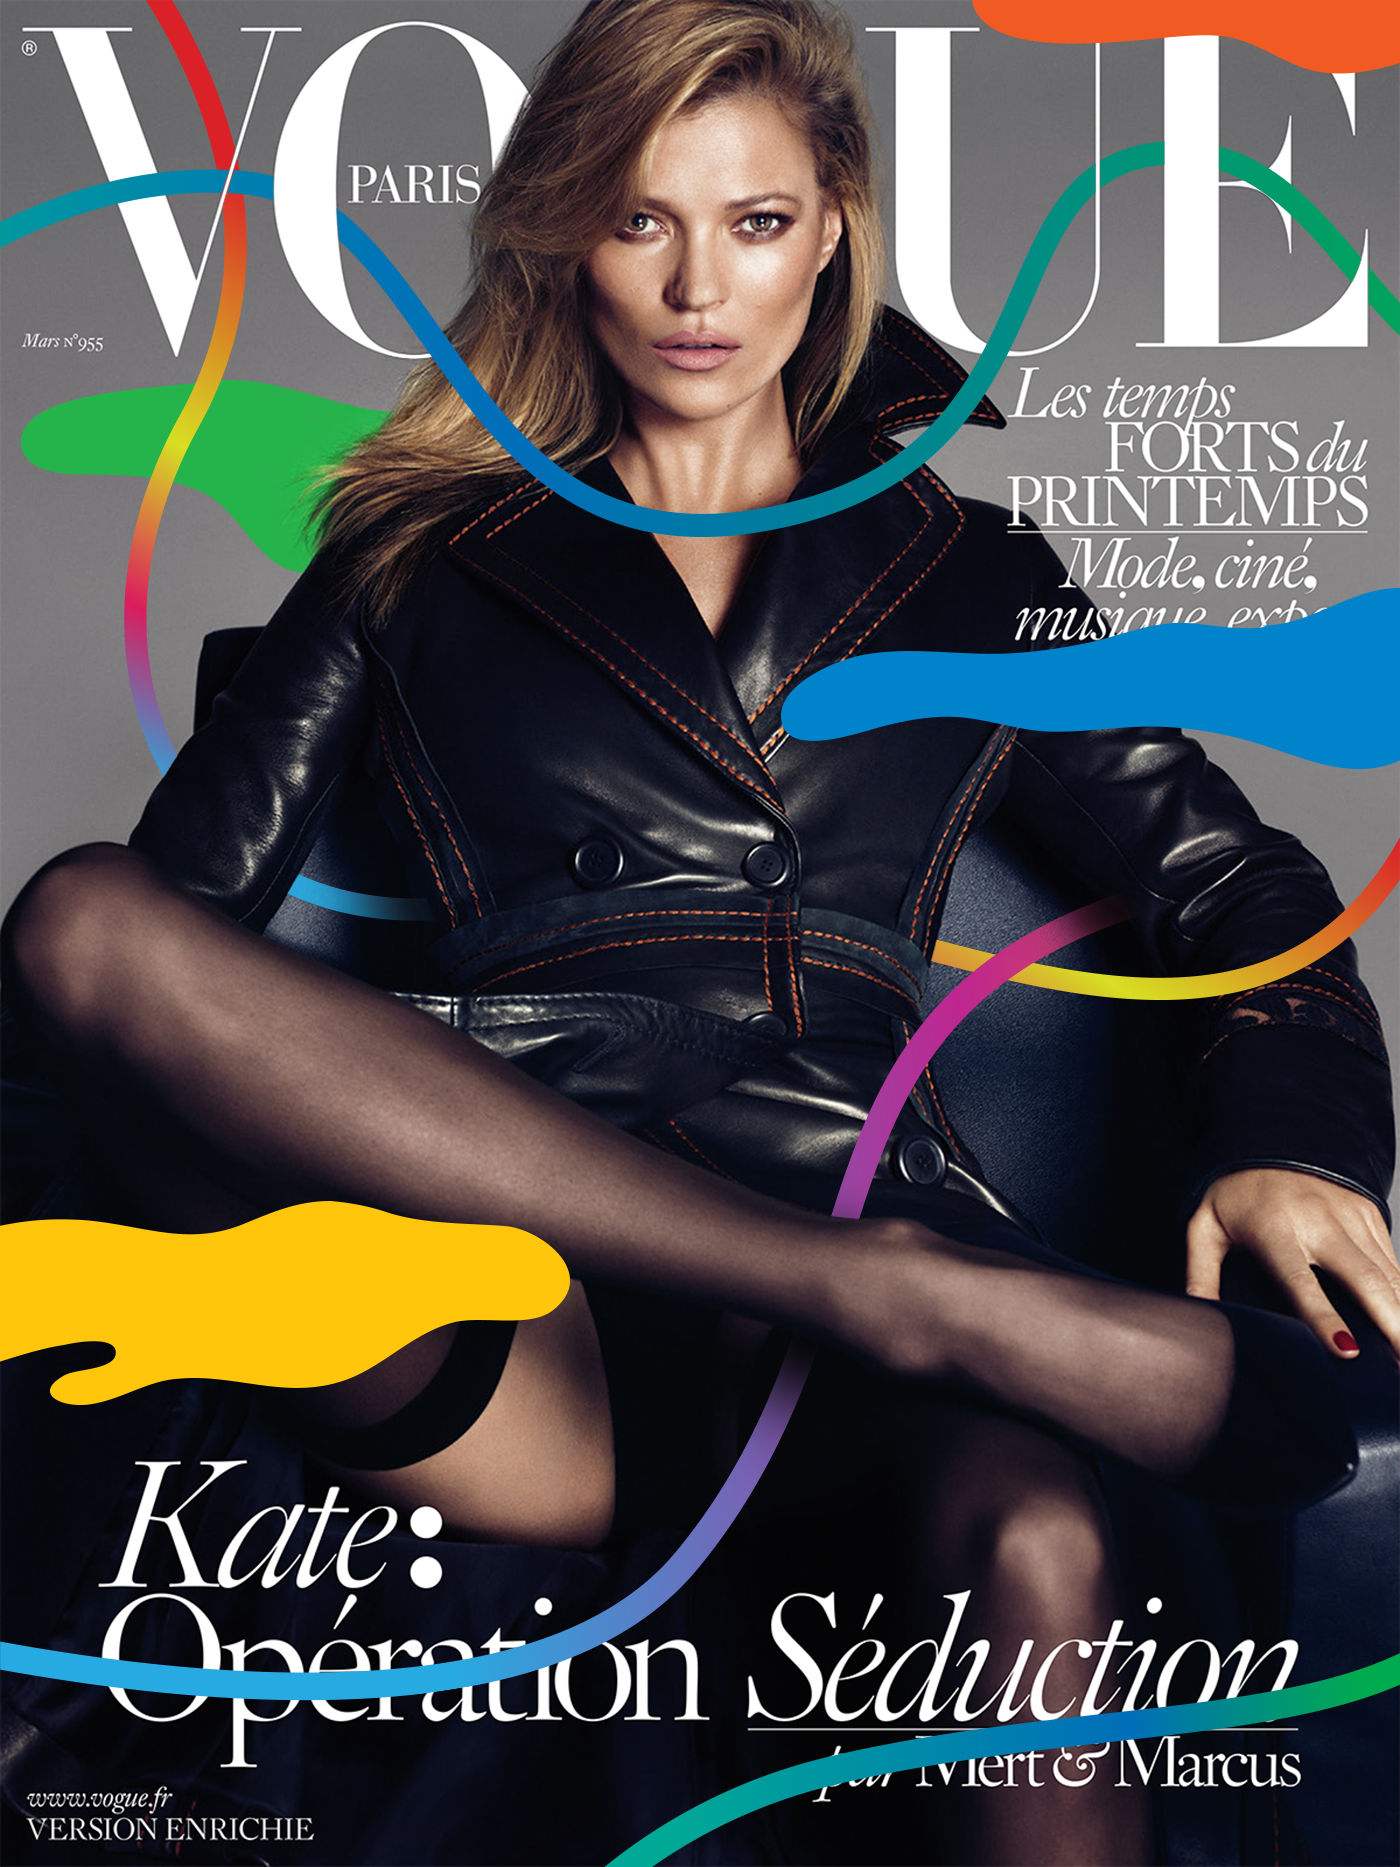 vogue paris fashion magazine doodle colorful kate moss Magazine Cover